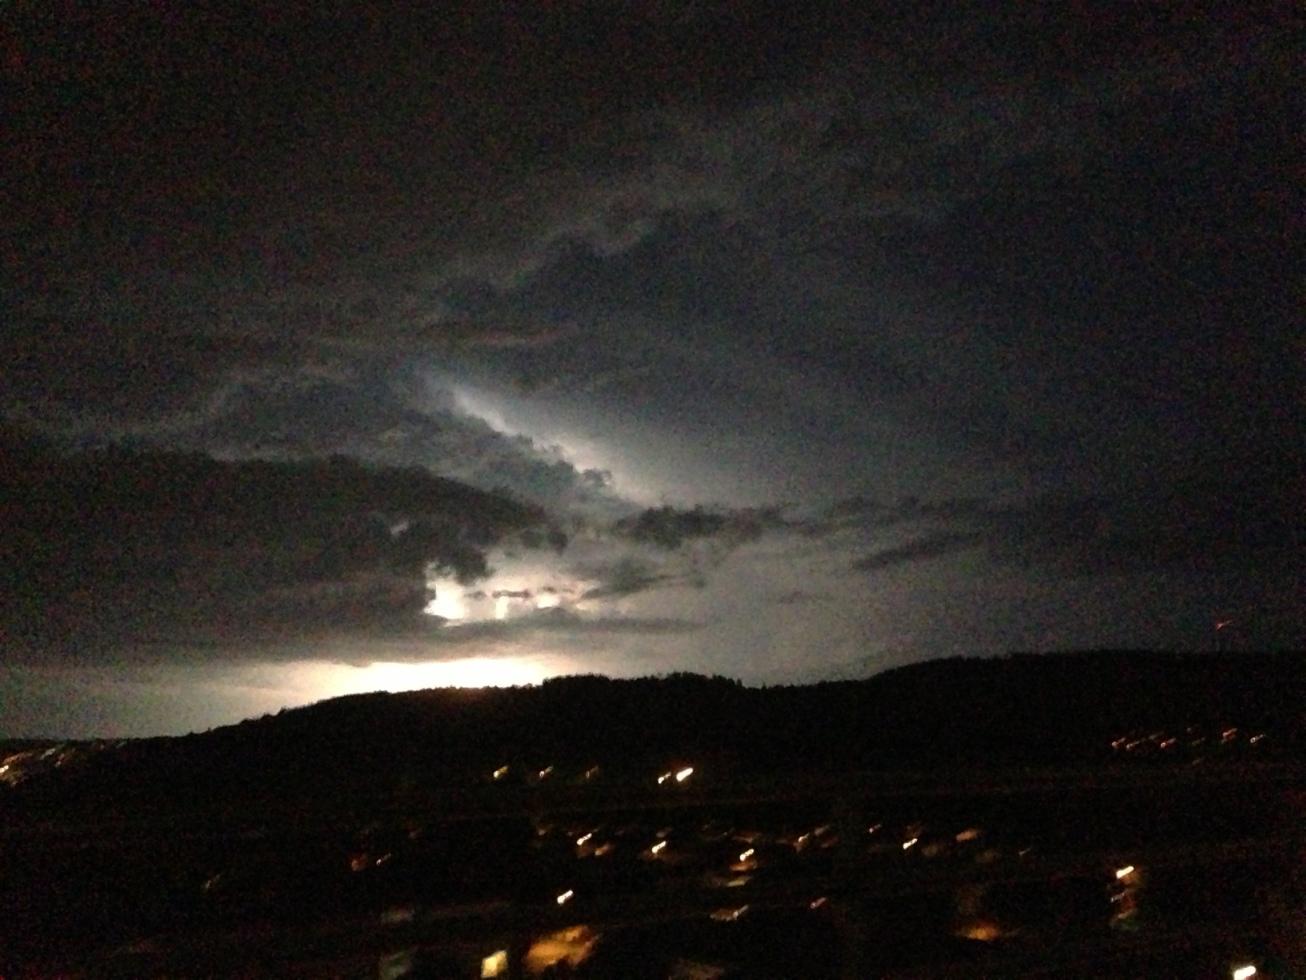 Fångade dagens åskväder på bild. Detta är en av många blixtar som kom under kvällen. Mysigt och mäktigt!